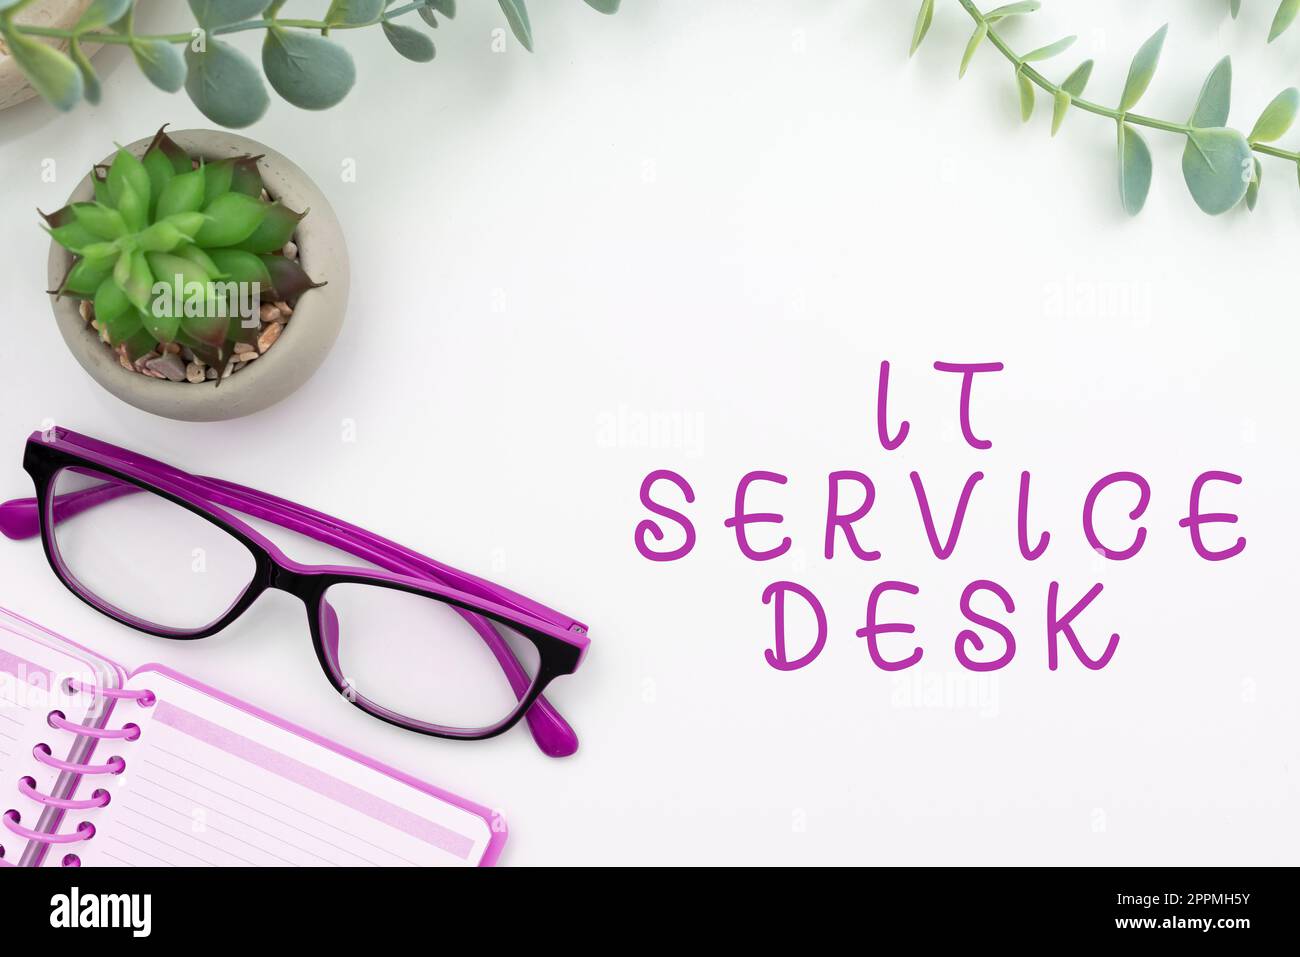 Légende présentant IT Service Desk. Mot écrit sur le centre d'aide en ligne de support technologique Banque D'Images